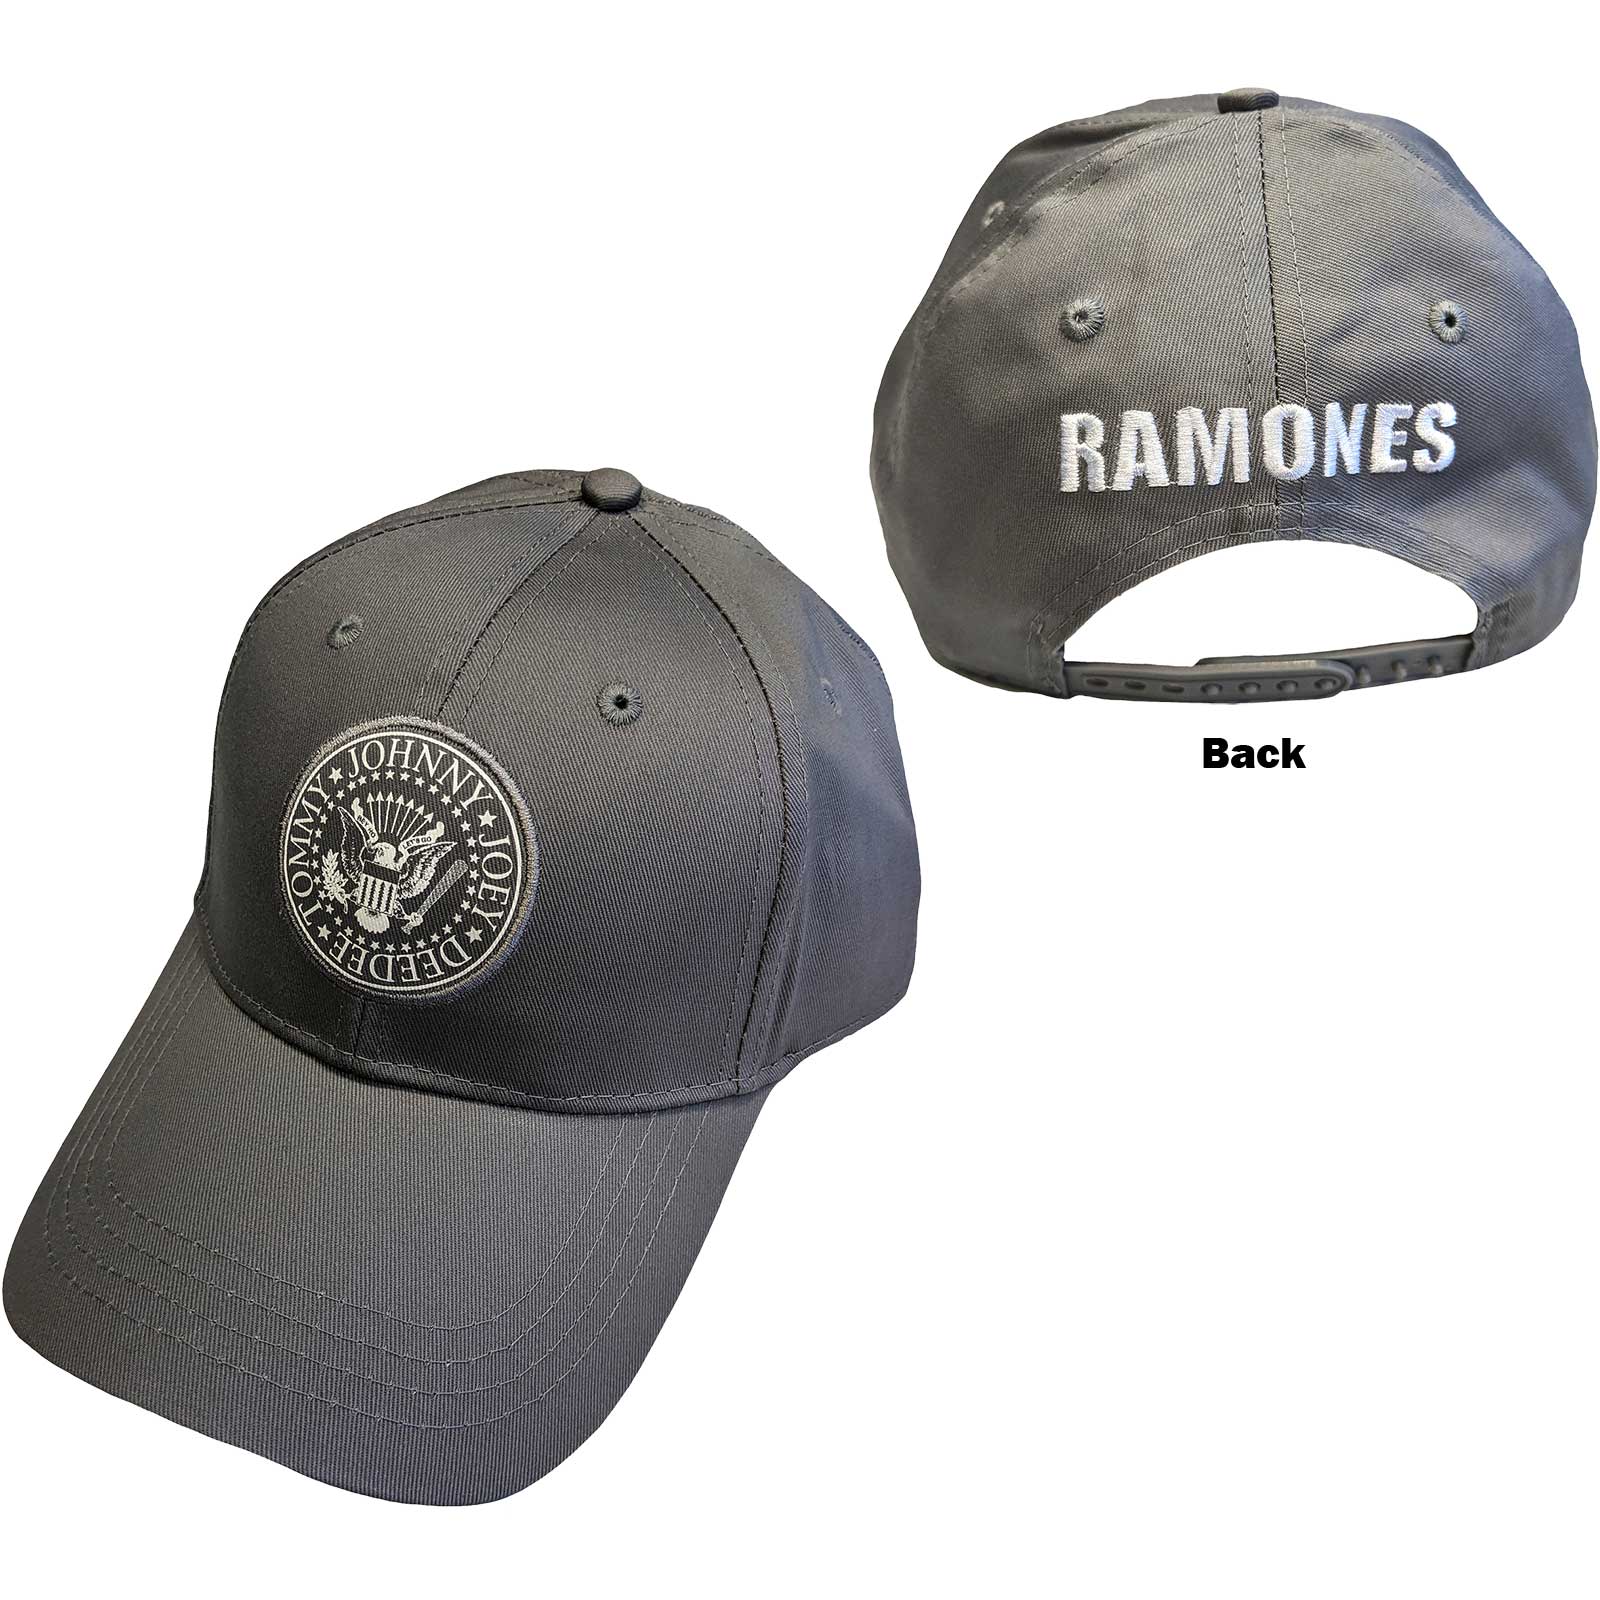 Casquette de baseball unisexe Ramones - Sceau présidentiel - Gris - Produit officiel